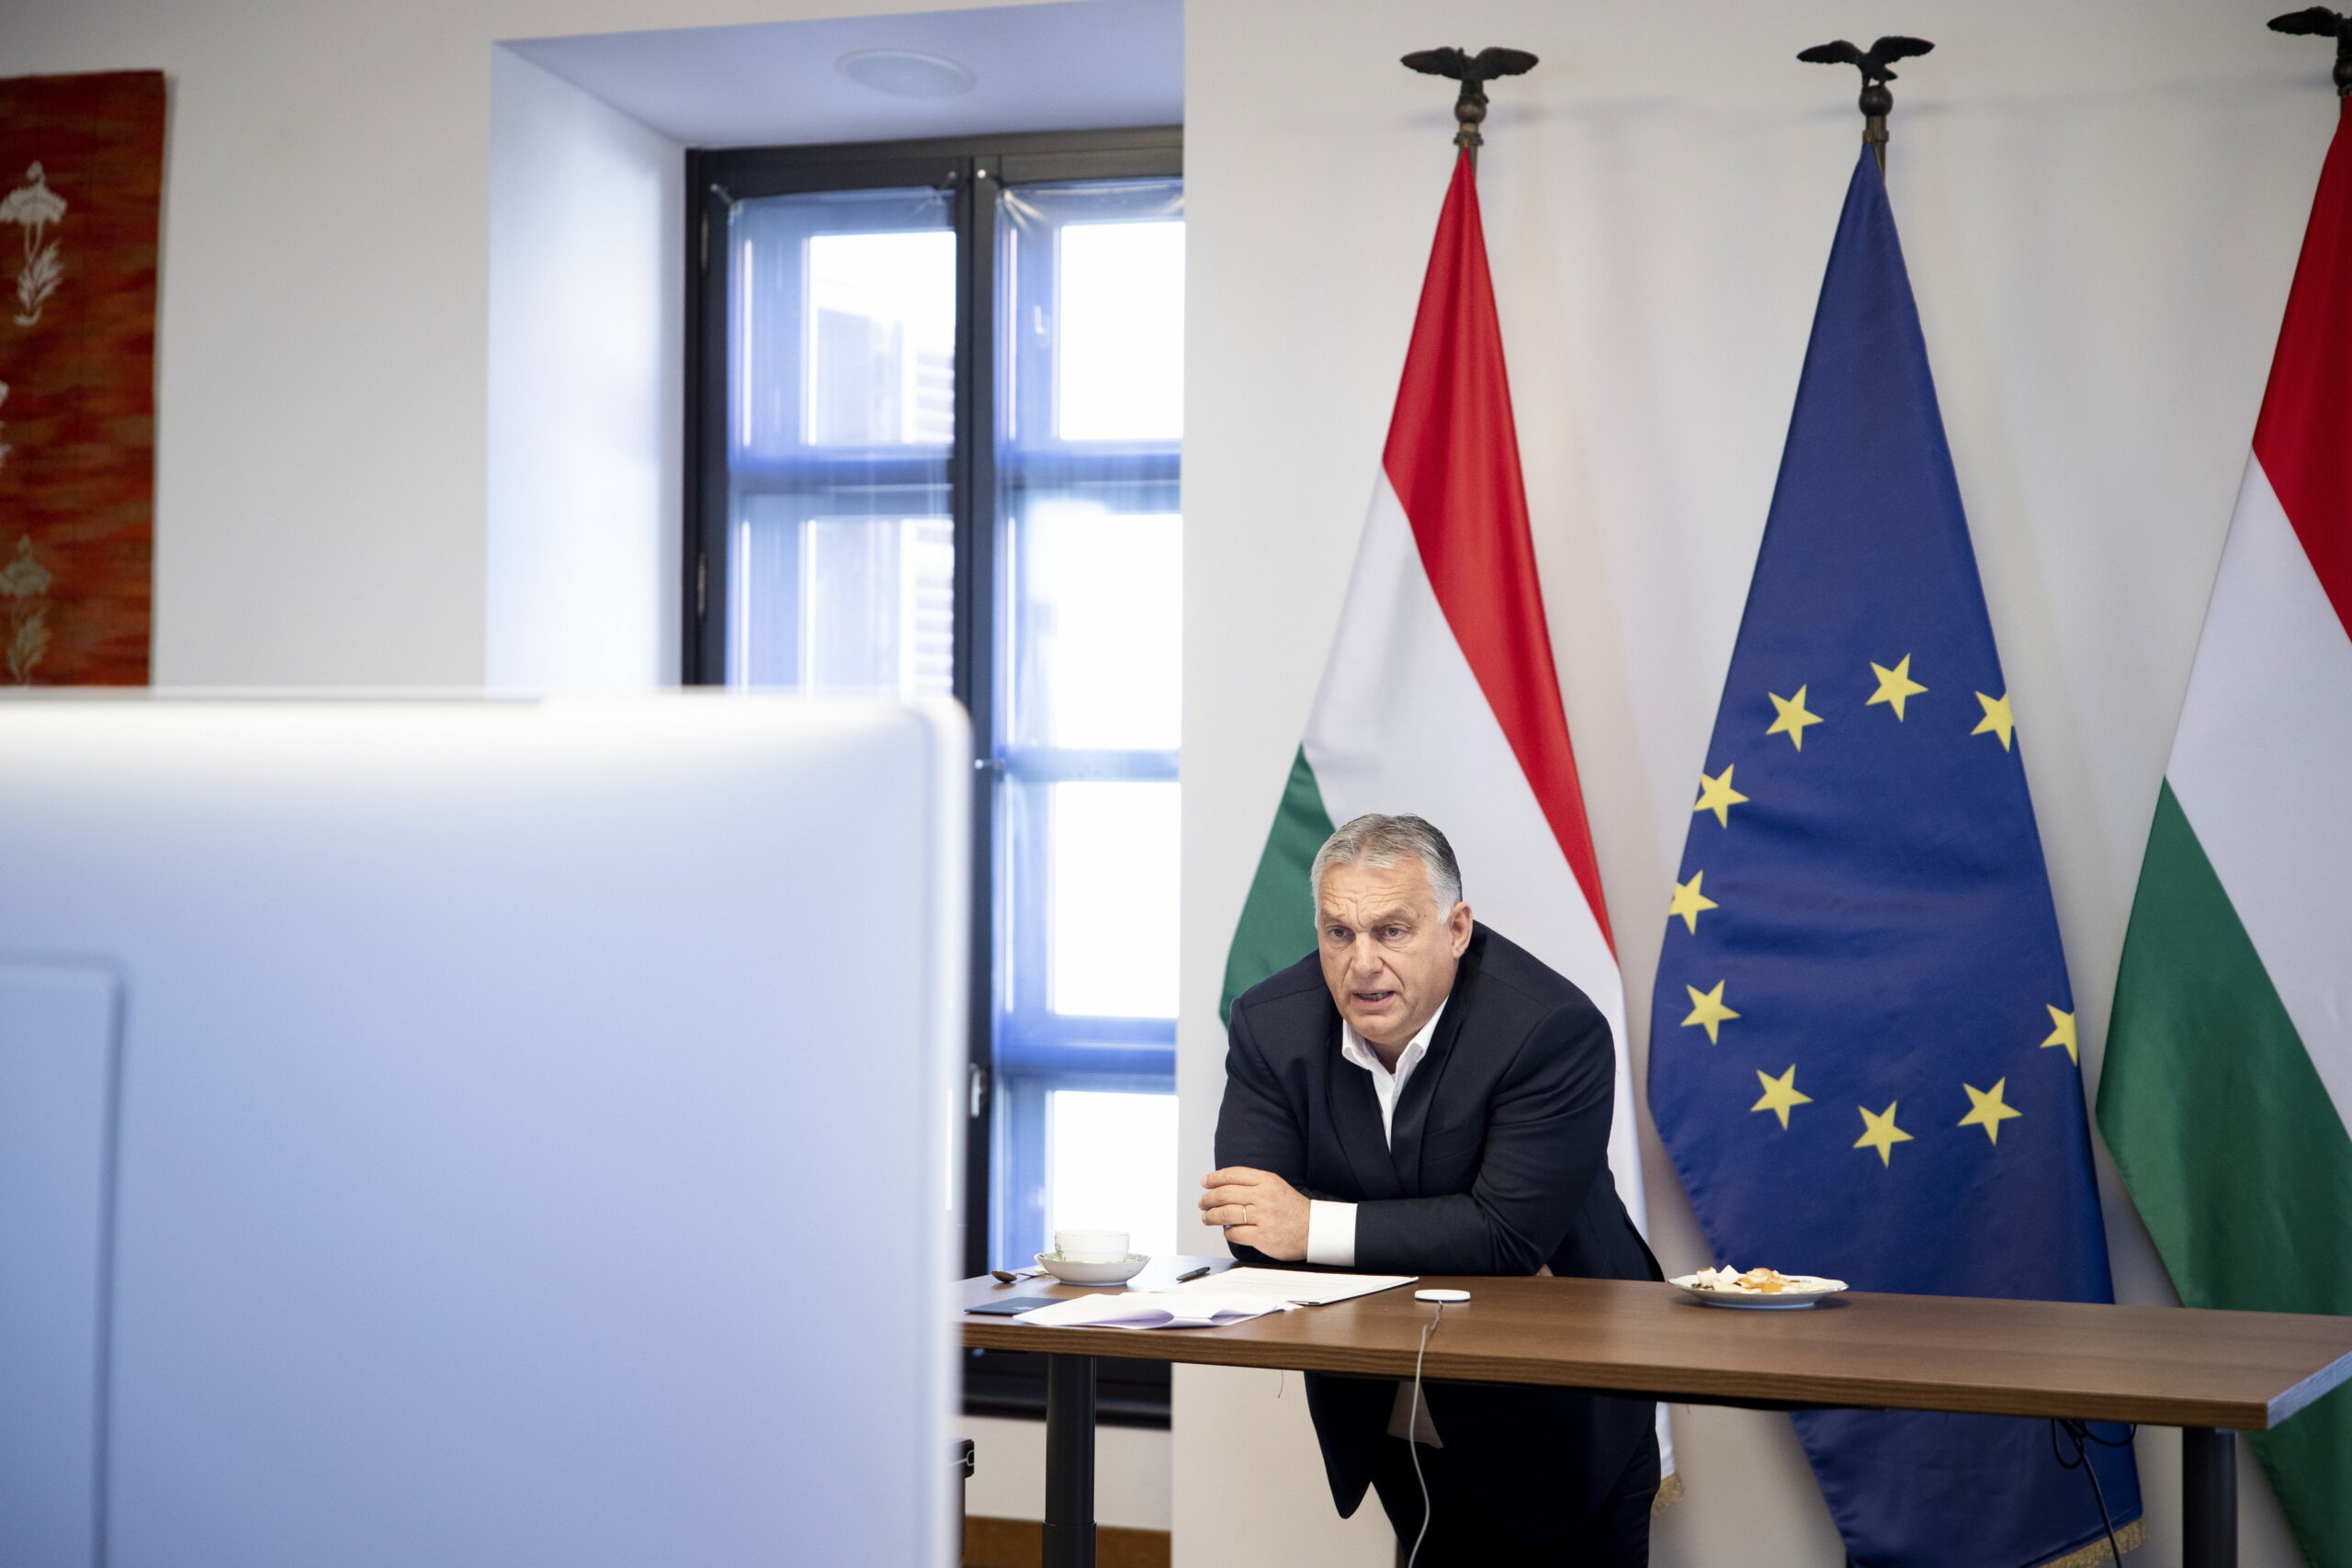 Döntöttek az uniós nagykövetek: megegyeztek a Magyarországnak járó uniós forrásokról